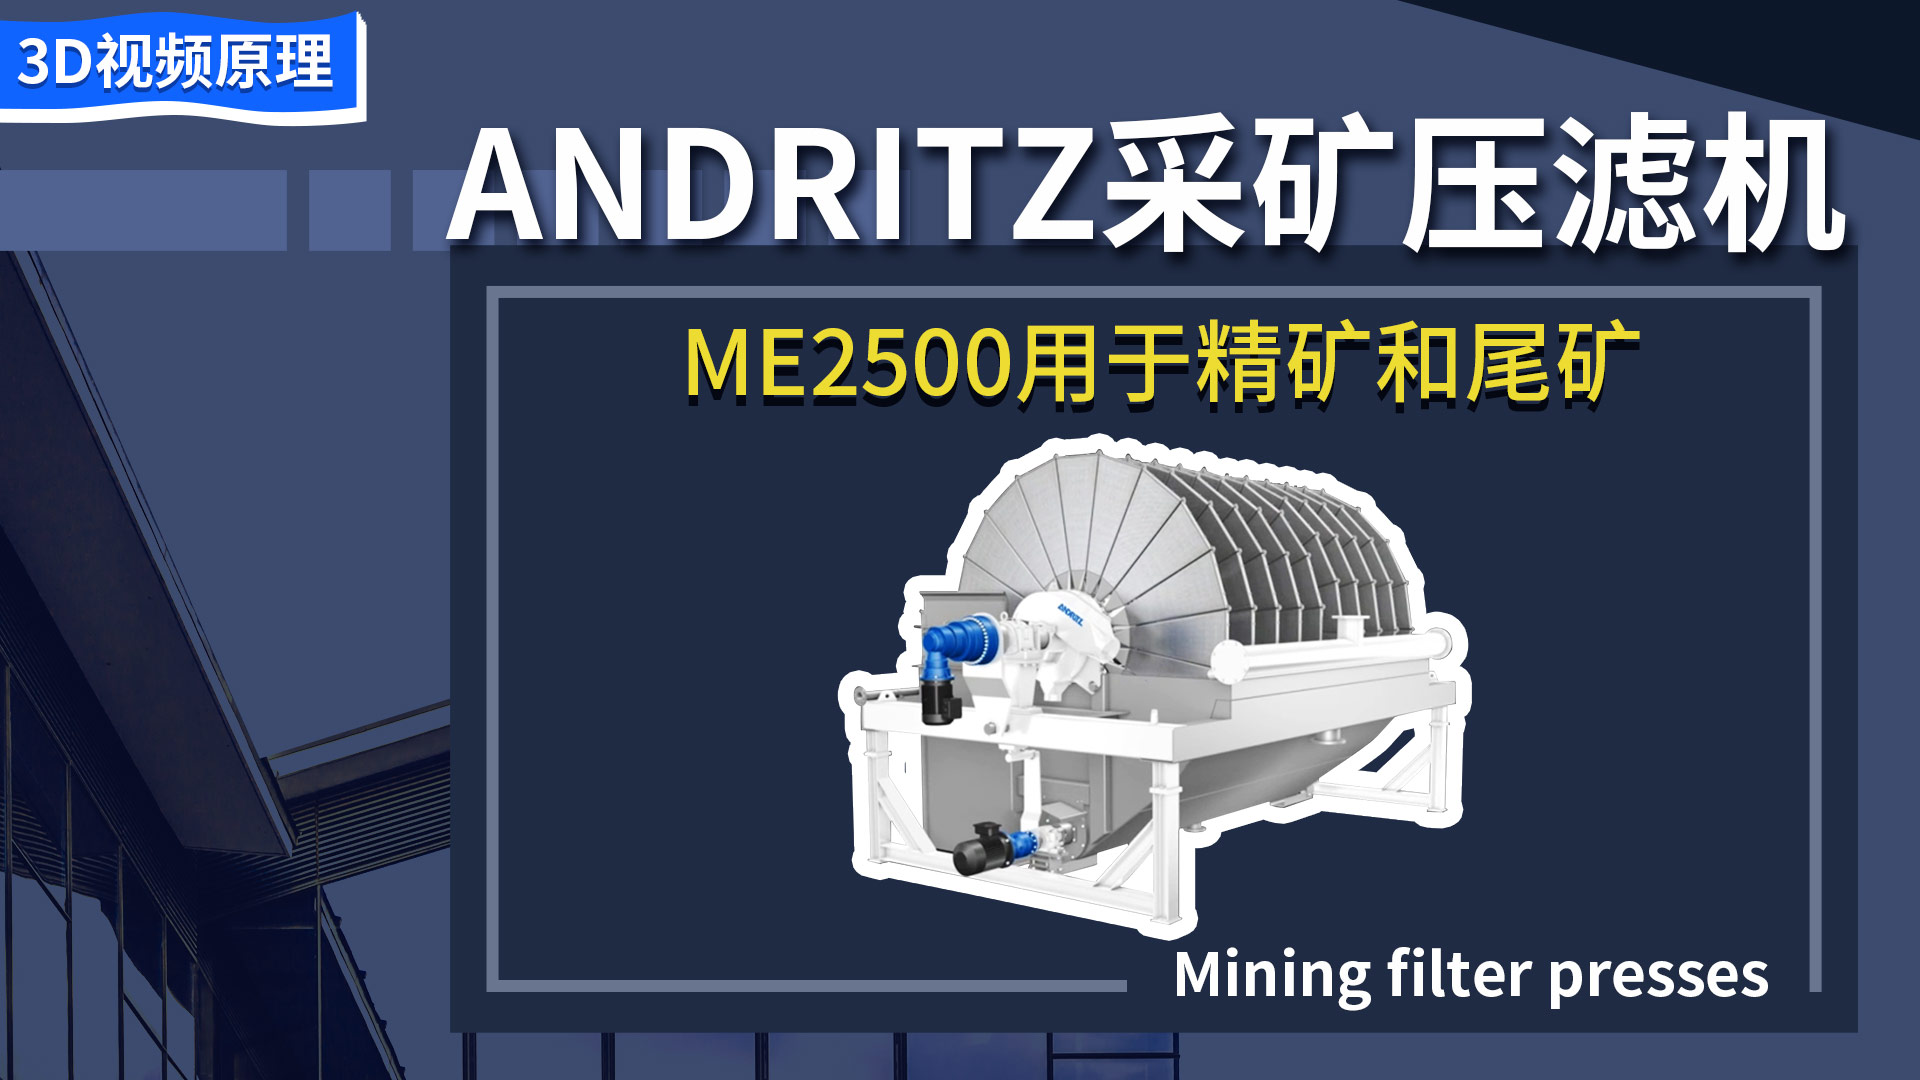 ANDRITZ采礦壓濾機ME2500用于精礦和尾礦